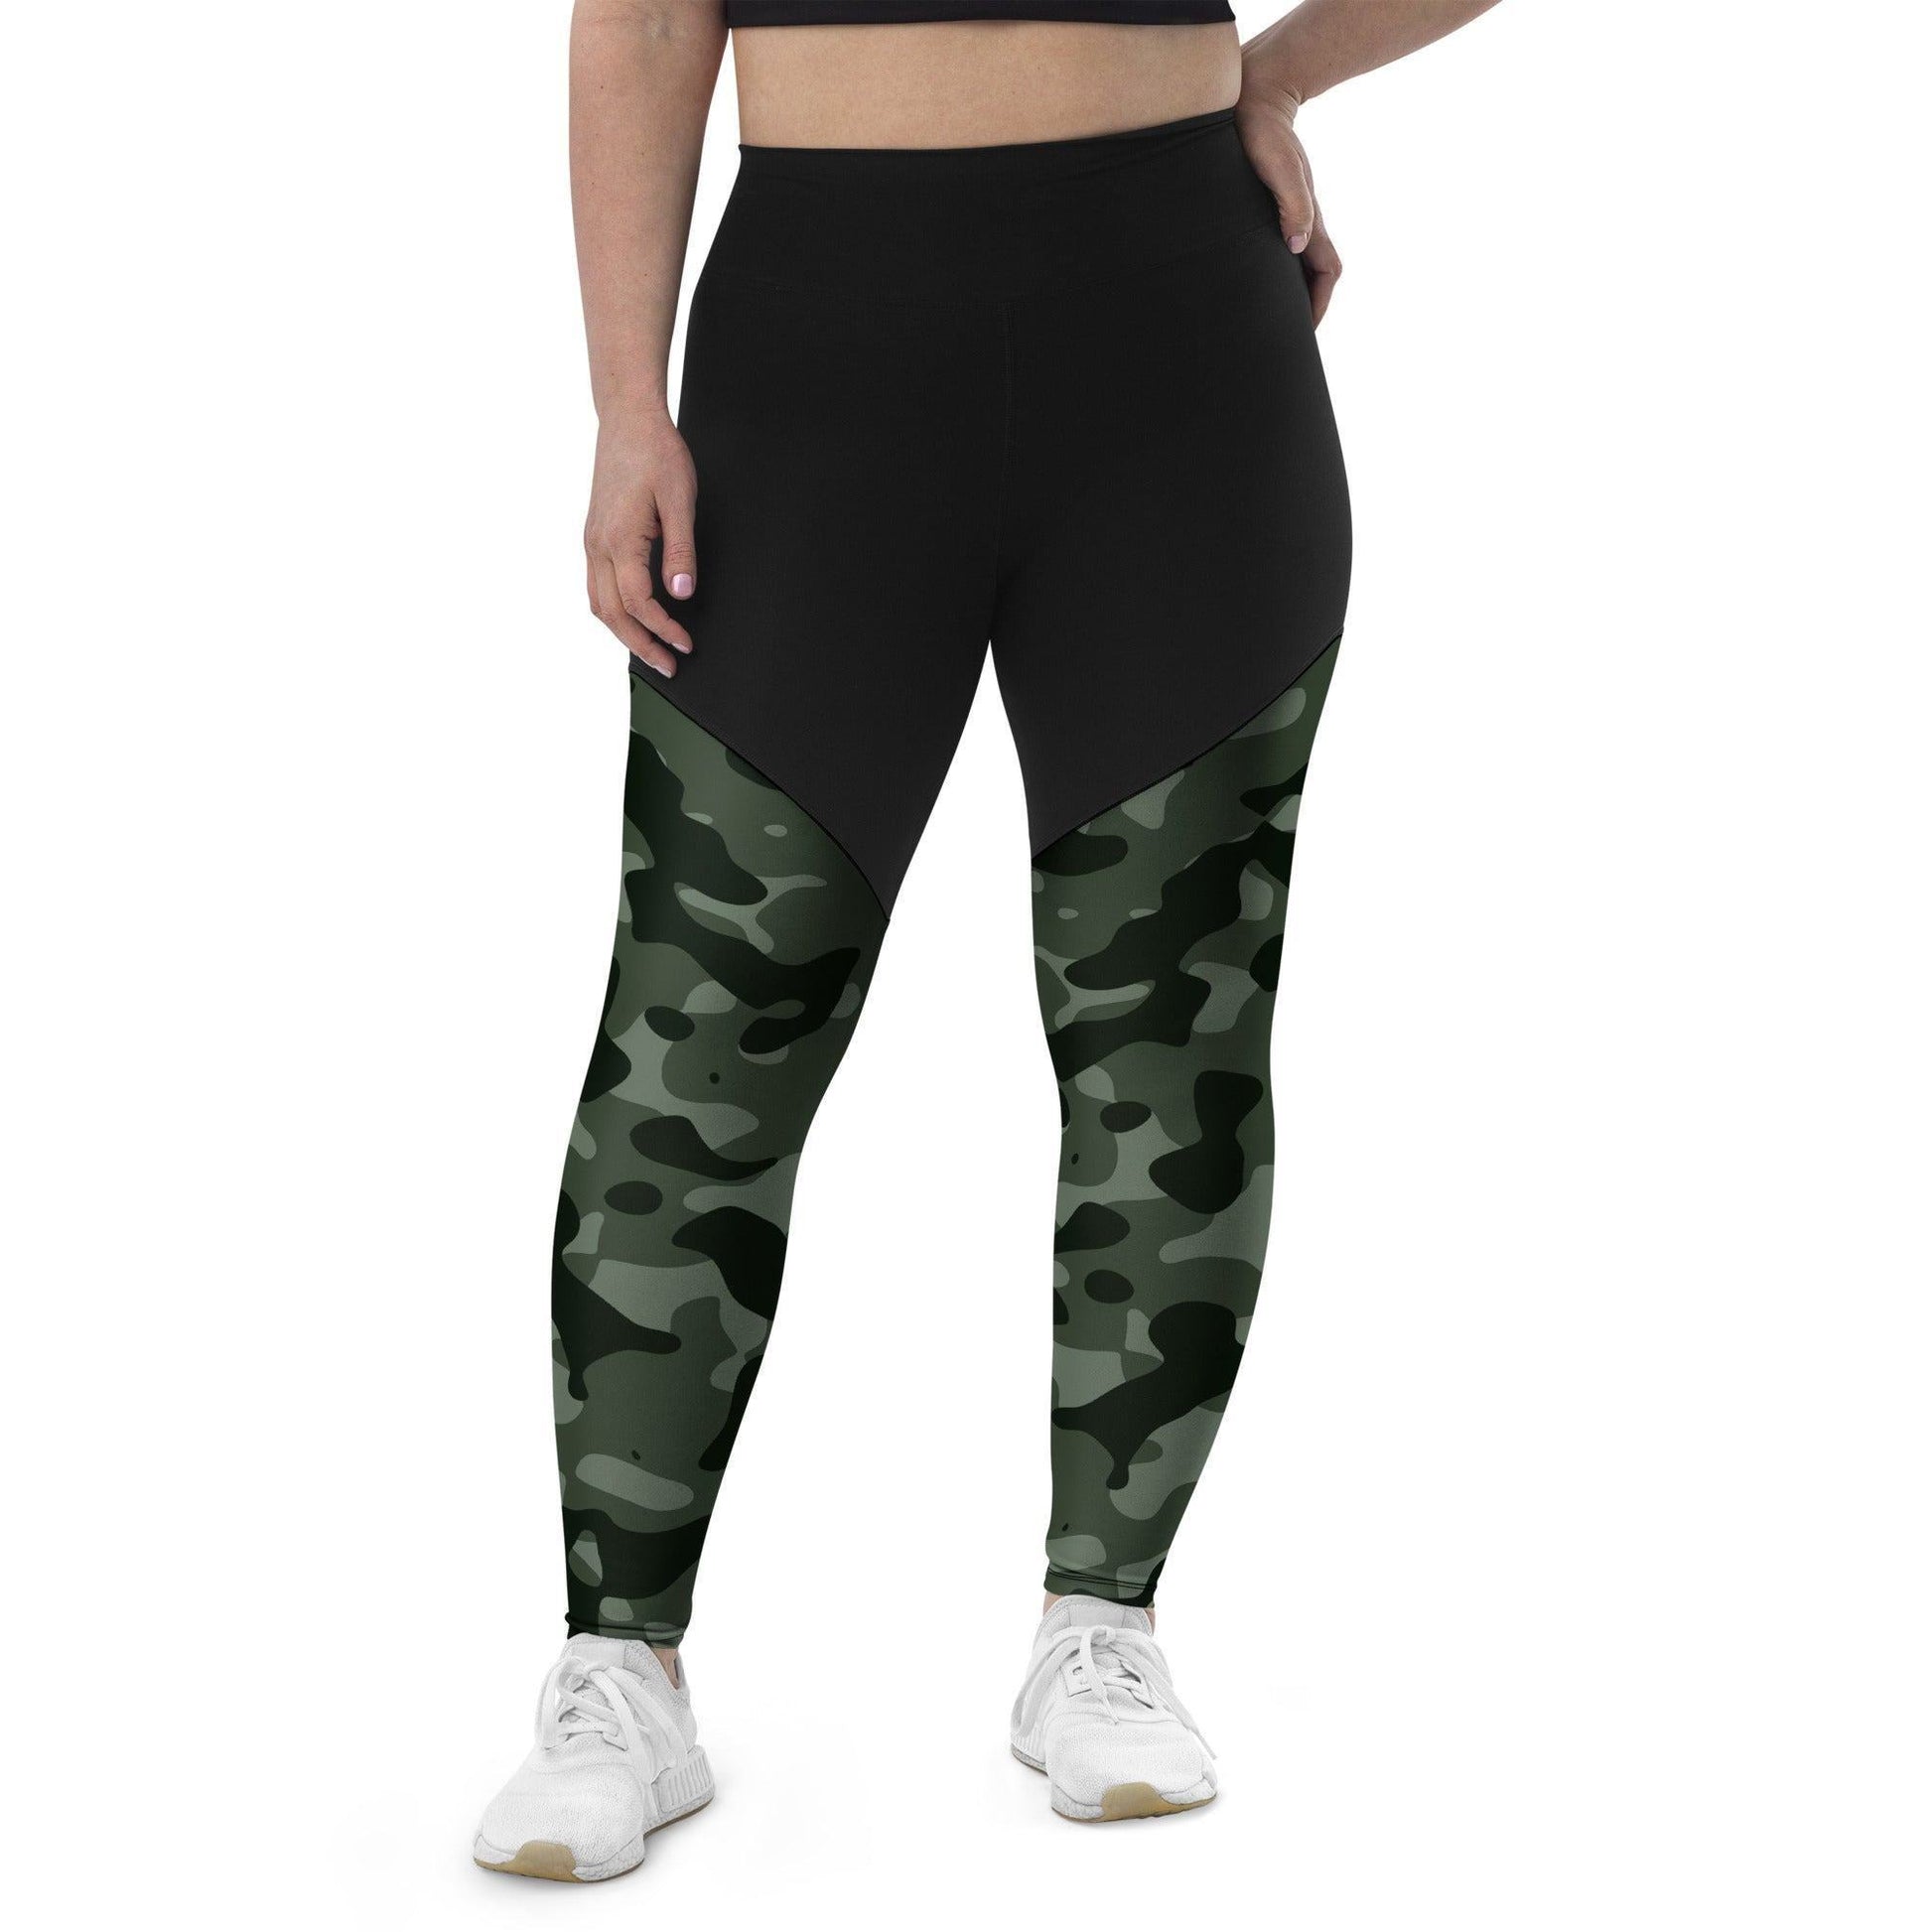 Green Camouflage Damen Sport Leggings -- Green Camouflage Damen Sport Leggings - undefined Sport Leggings | JLR Design